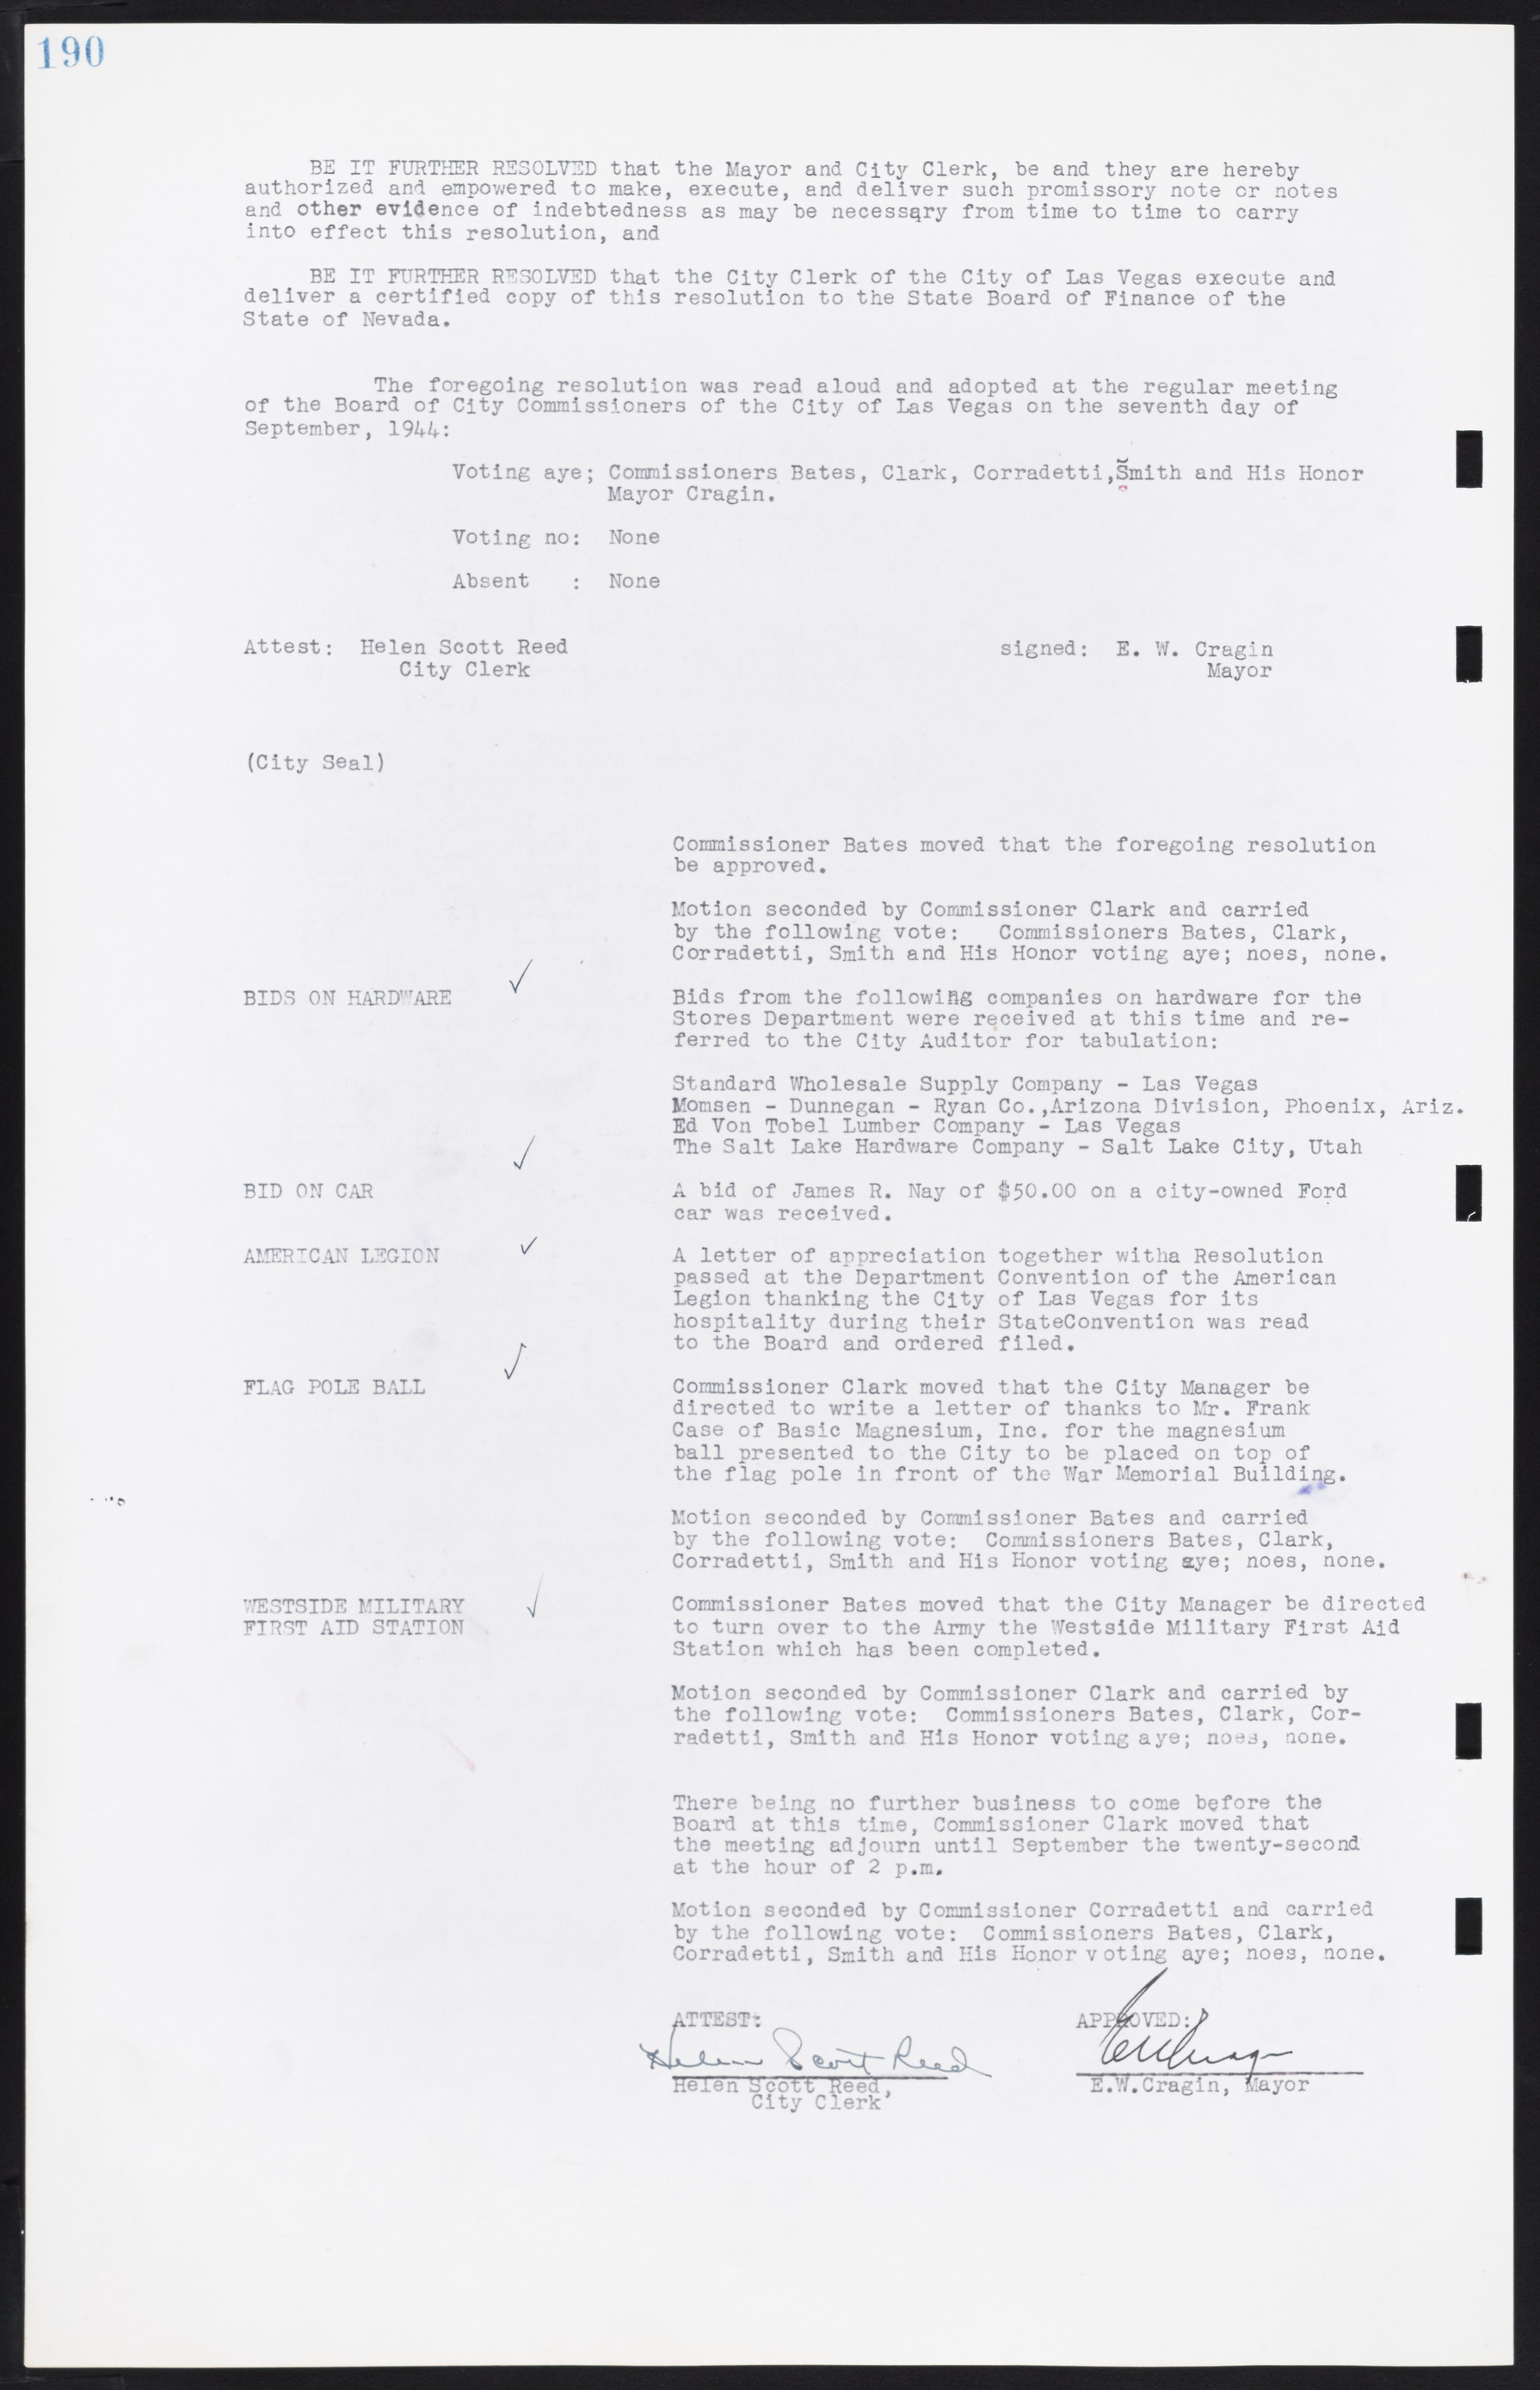 Las Vegas City Commission Minutes, August 11, 1942 to December 30, 1946, lvc000005-209